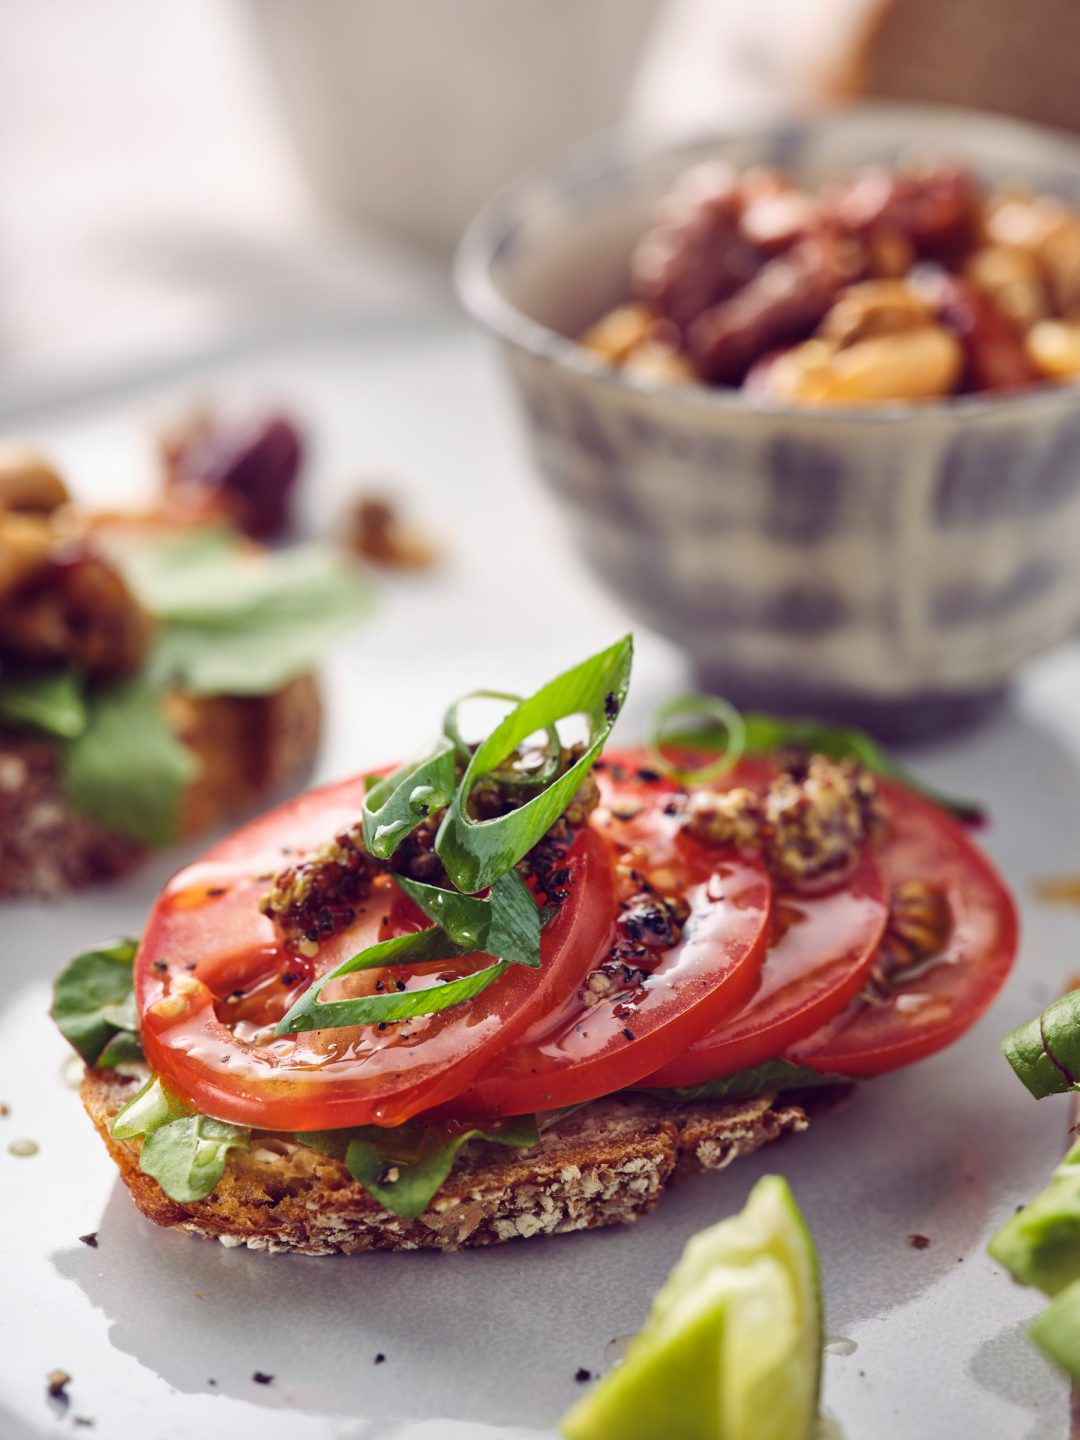 Closeup Foodfotografie eines leckeren Brotes belegt mit Tomaten - Fotografiert durch Studio Hackenberg in Kiel für taste appeal–